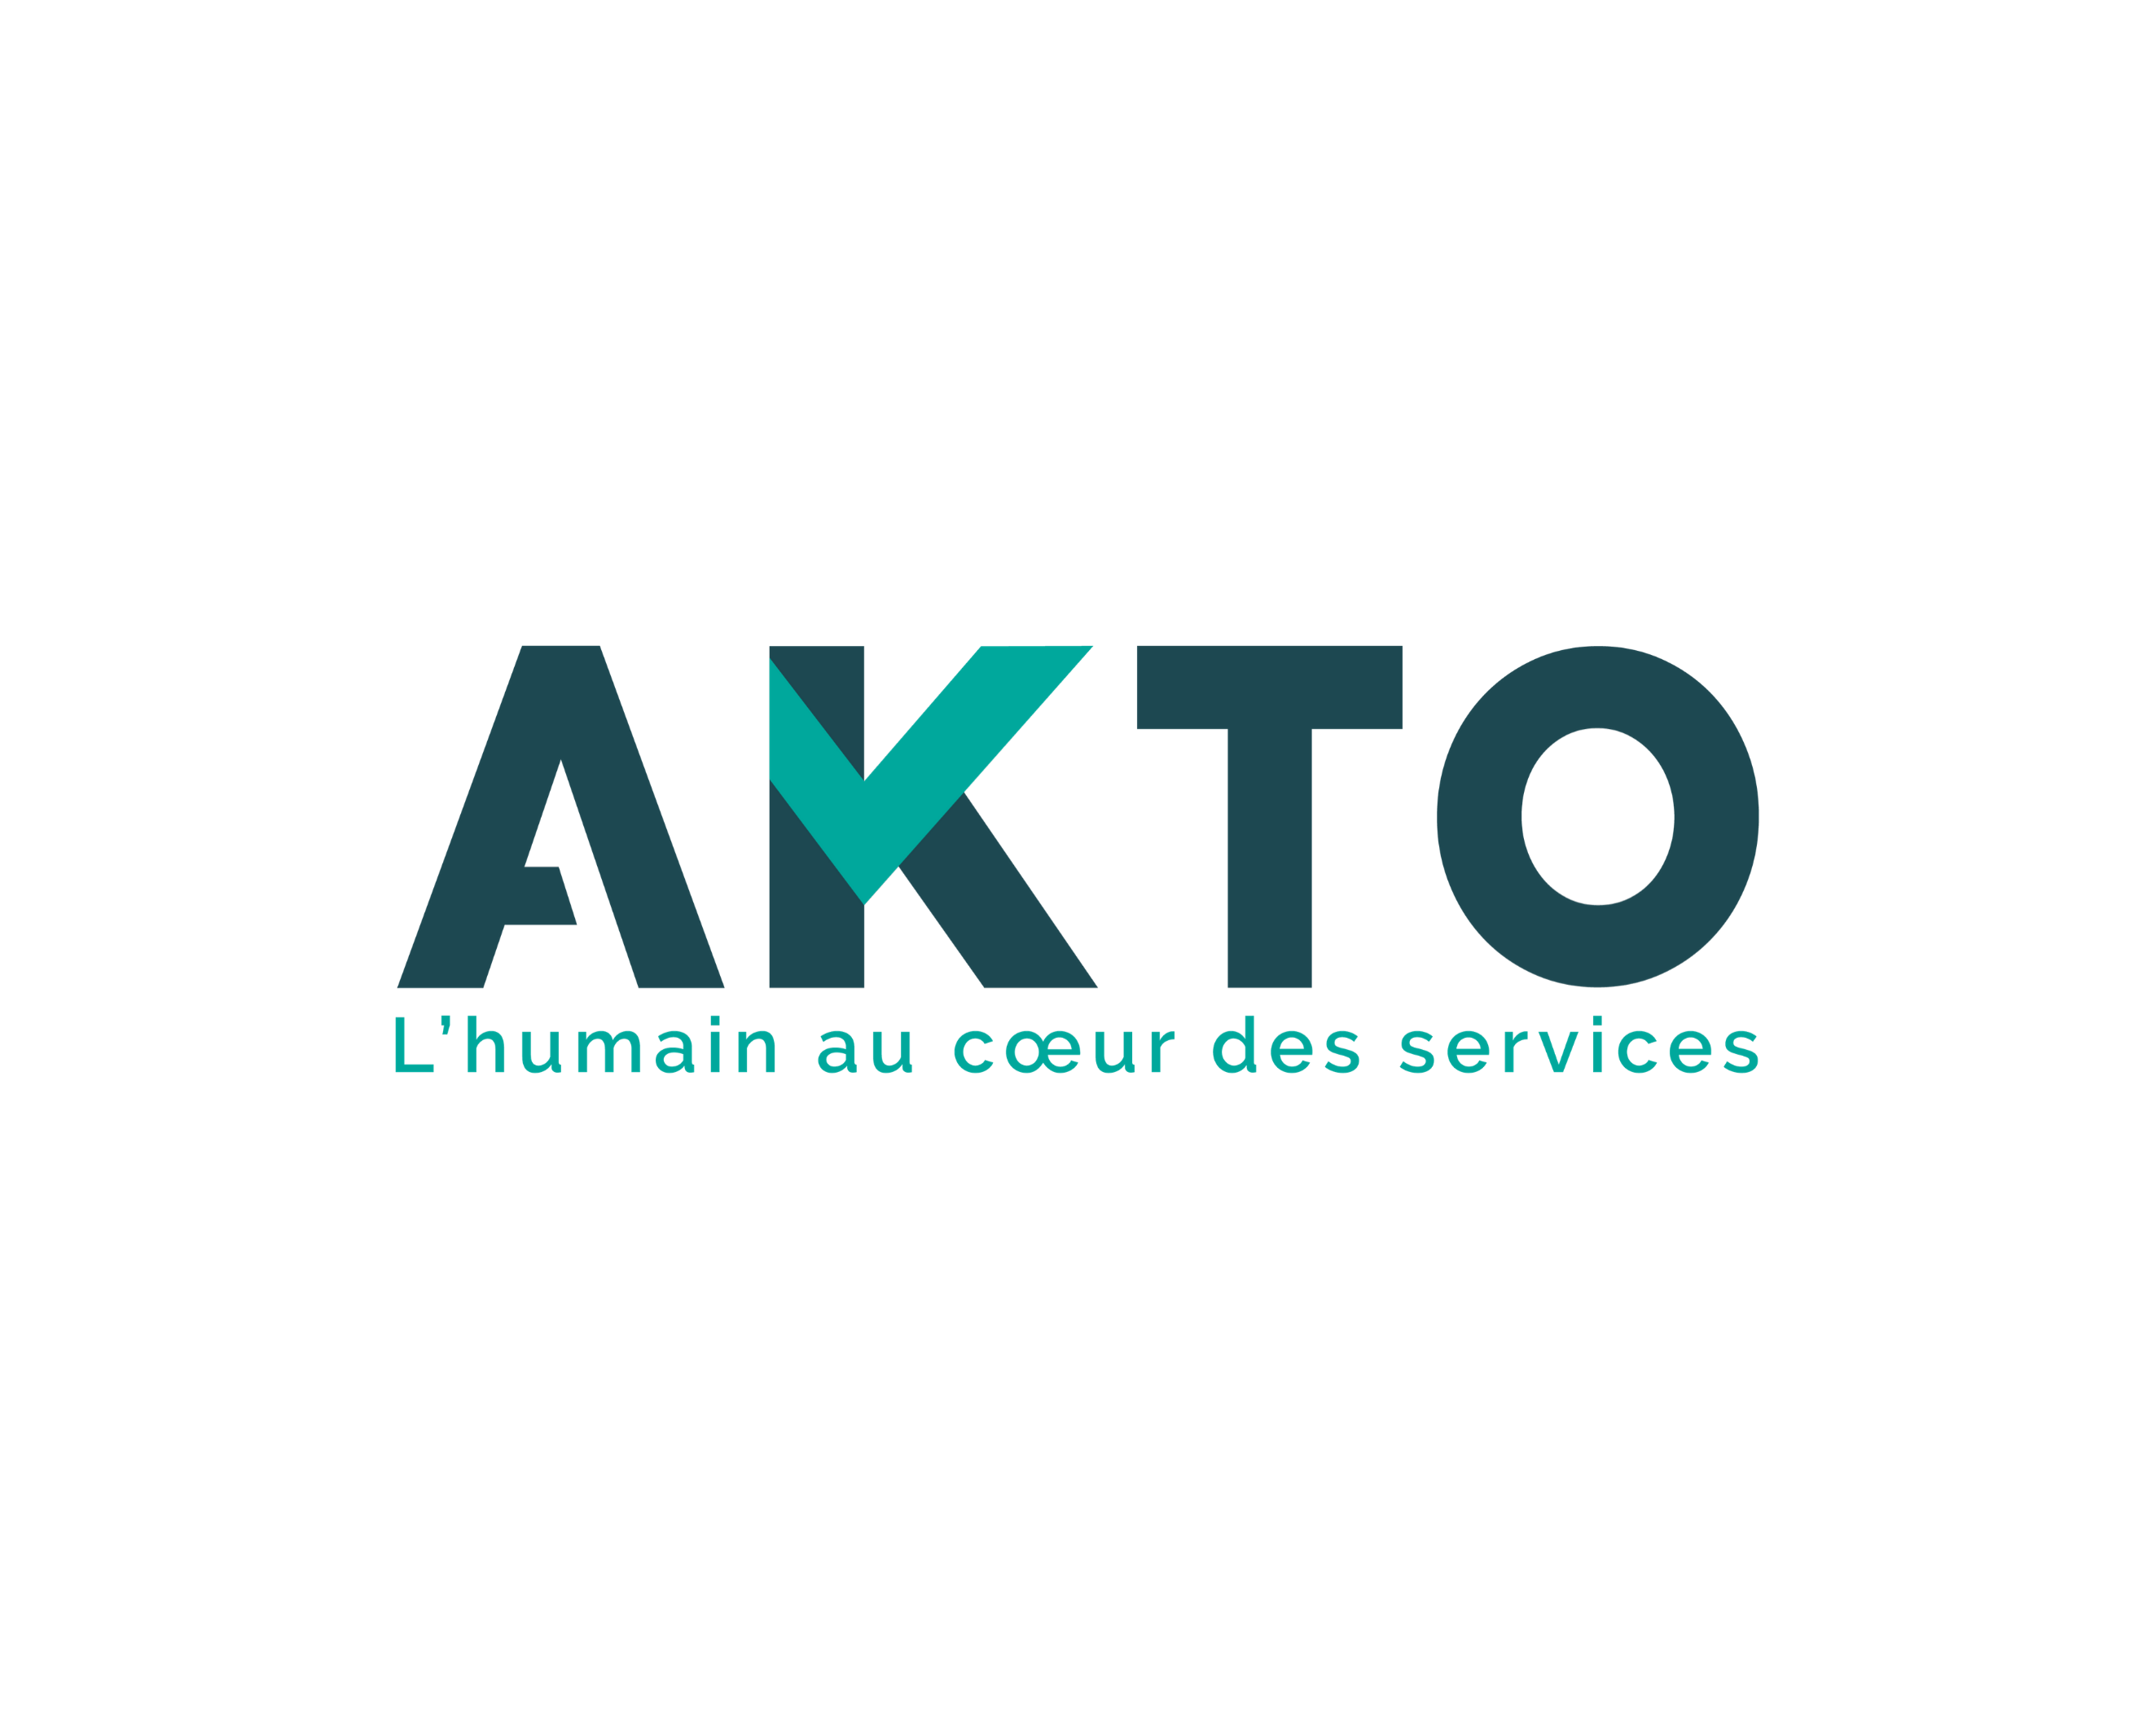 AKTO - Entreprise à forte intensité de main d'oeuvre